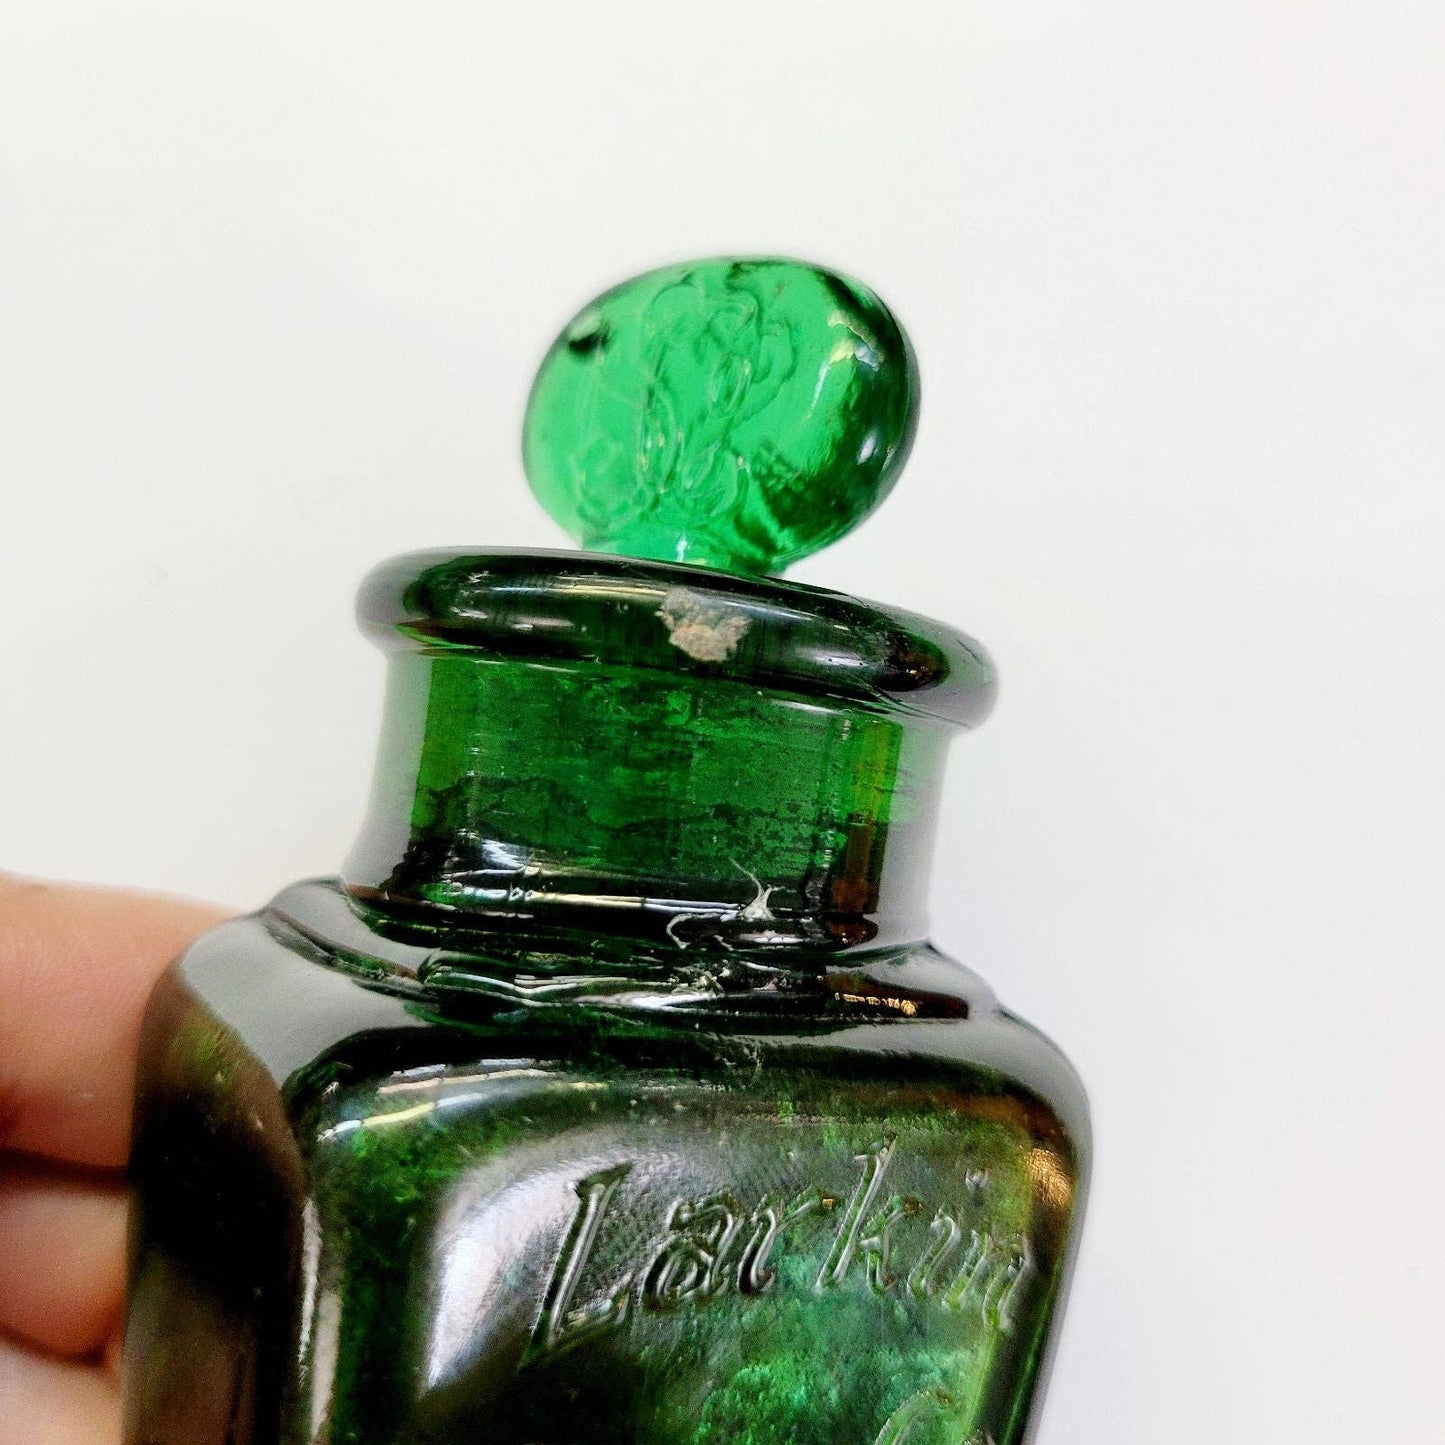 Antique Larkin Soap Co Bottle